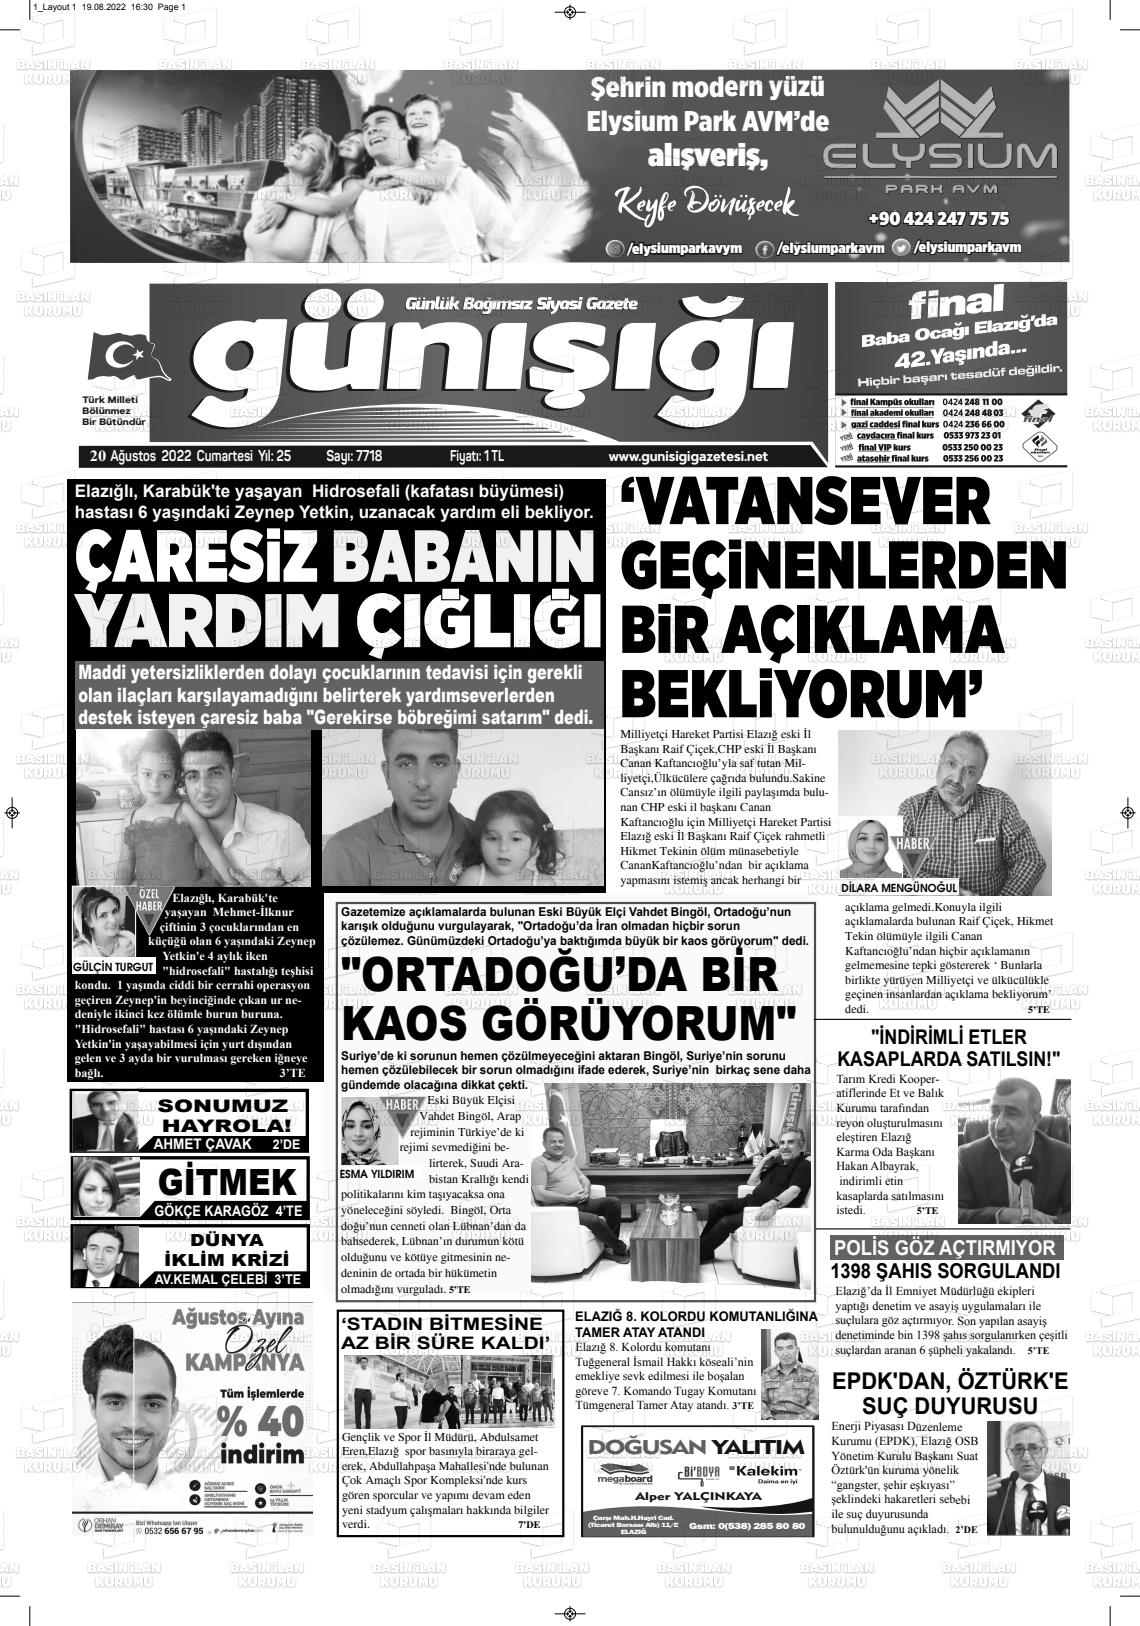 20 Ağustos 2022 Gün Işığı Gazete Manşeti